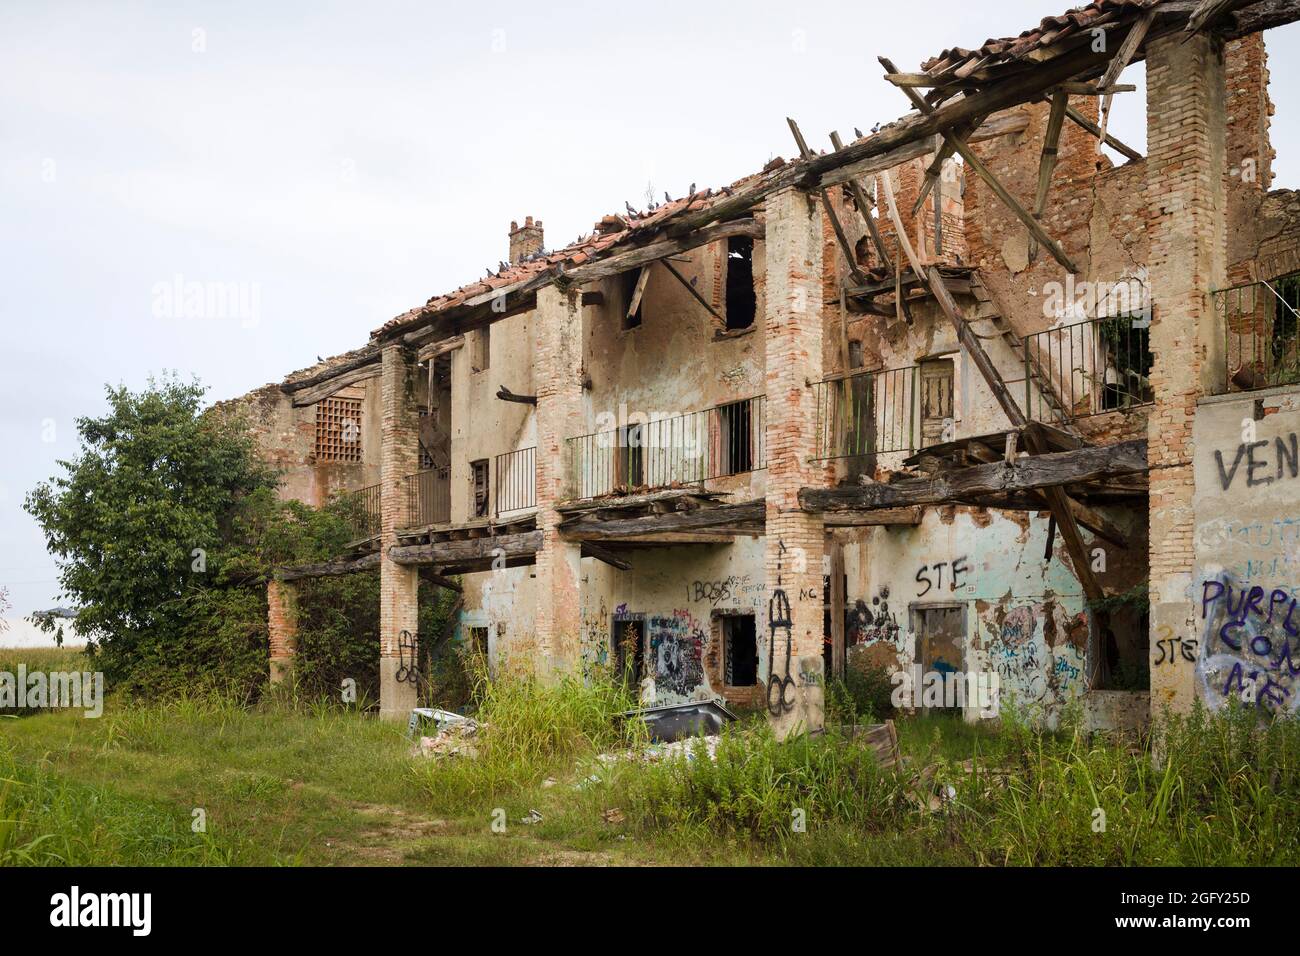 Une ancienne ferme en briques (cascina) ruinée et abandonnée près de Treviglio dans la région Lombardie / Lombardie. Banque D'Images